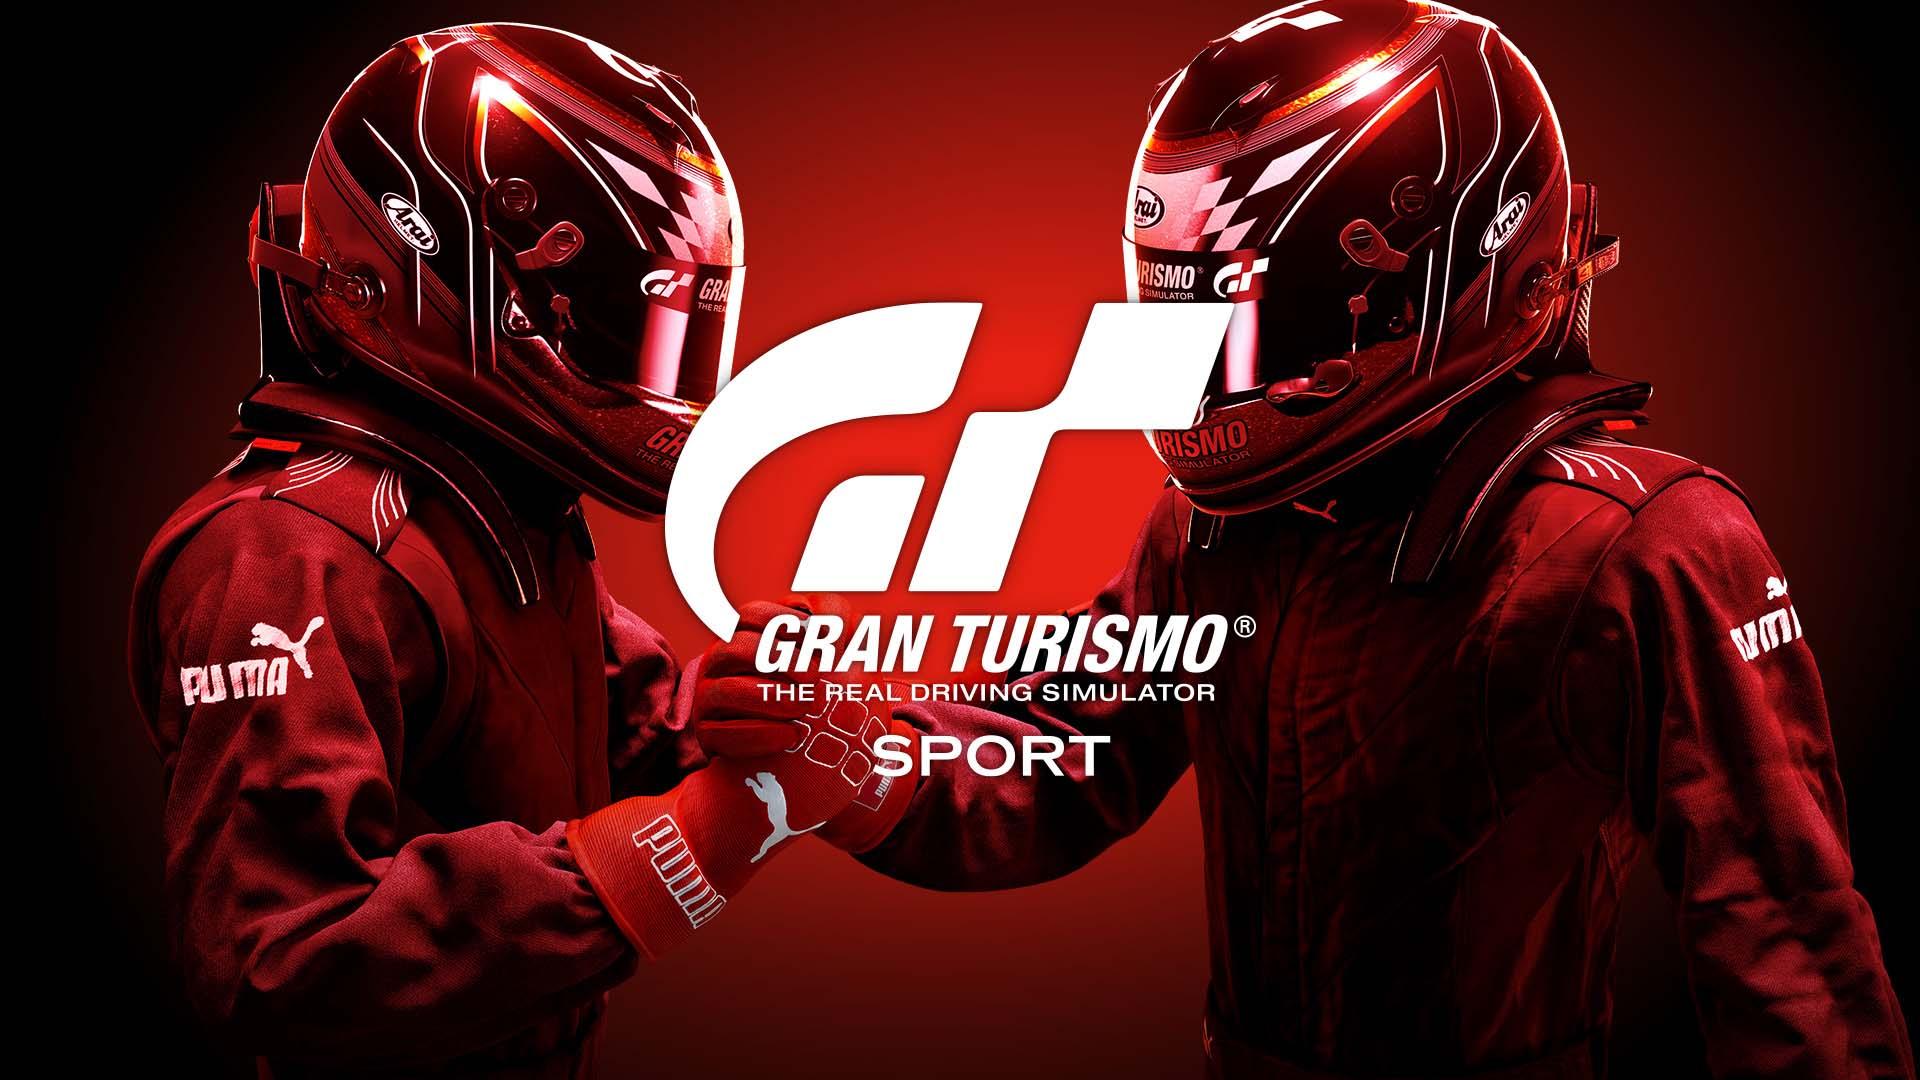 امکان کسب جواز حضور در المپیک با بازی Gran Turismo Sport